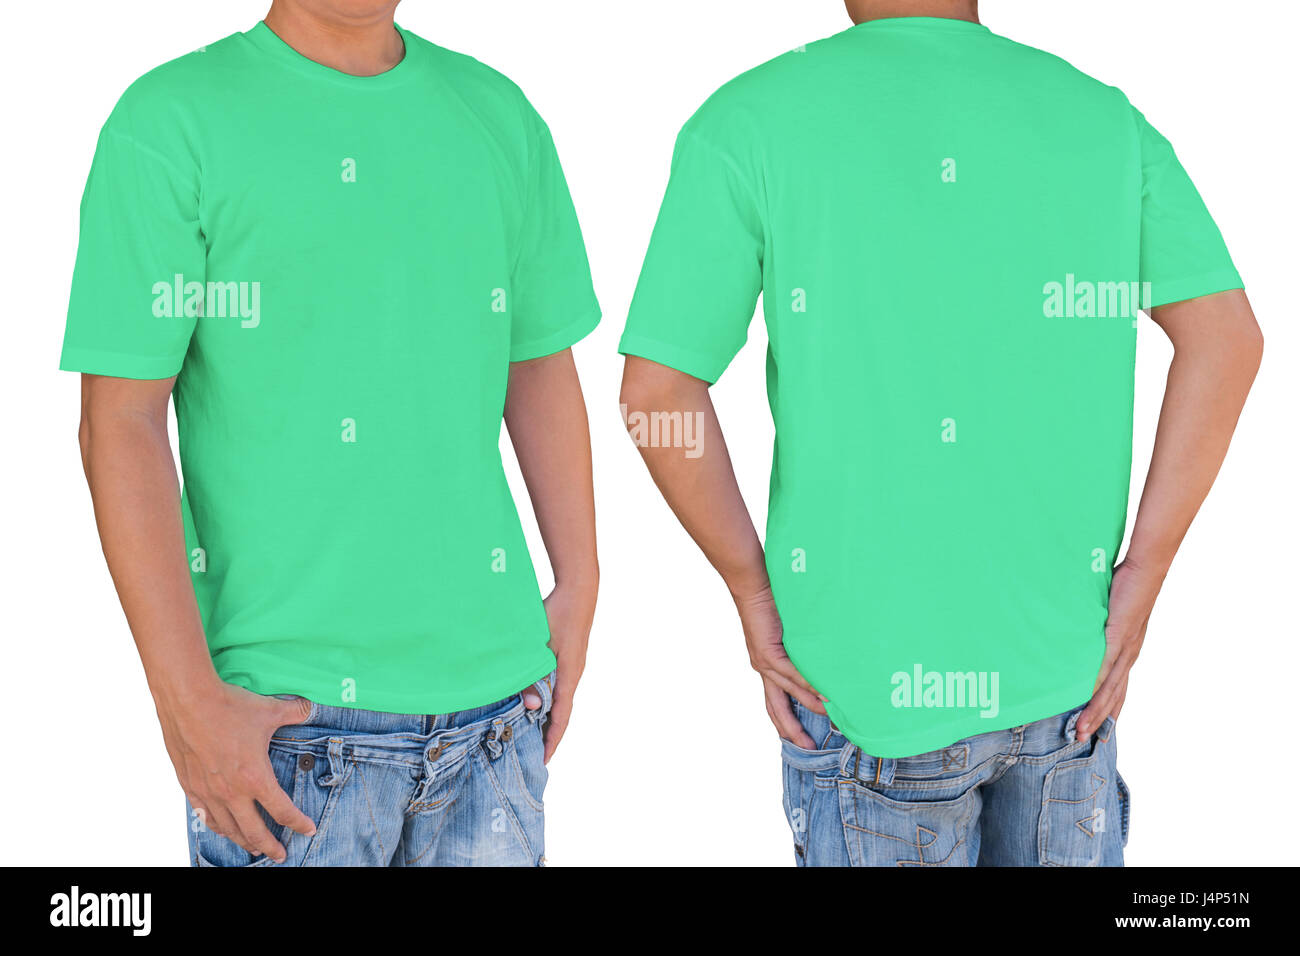 Camiseta color aguamarina fotografías imágenes de - Alamy